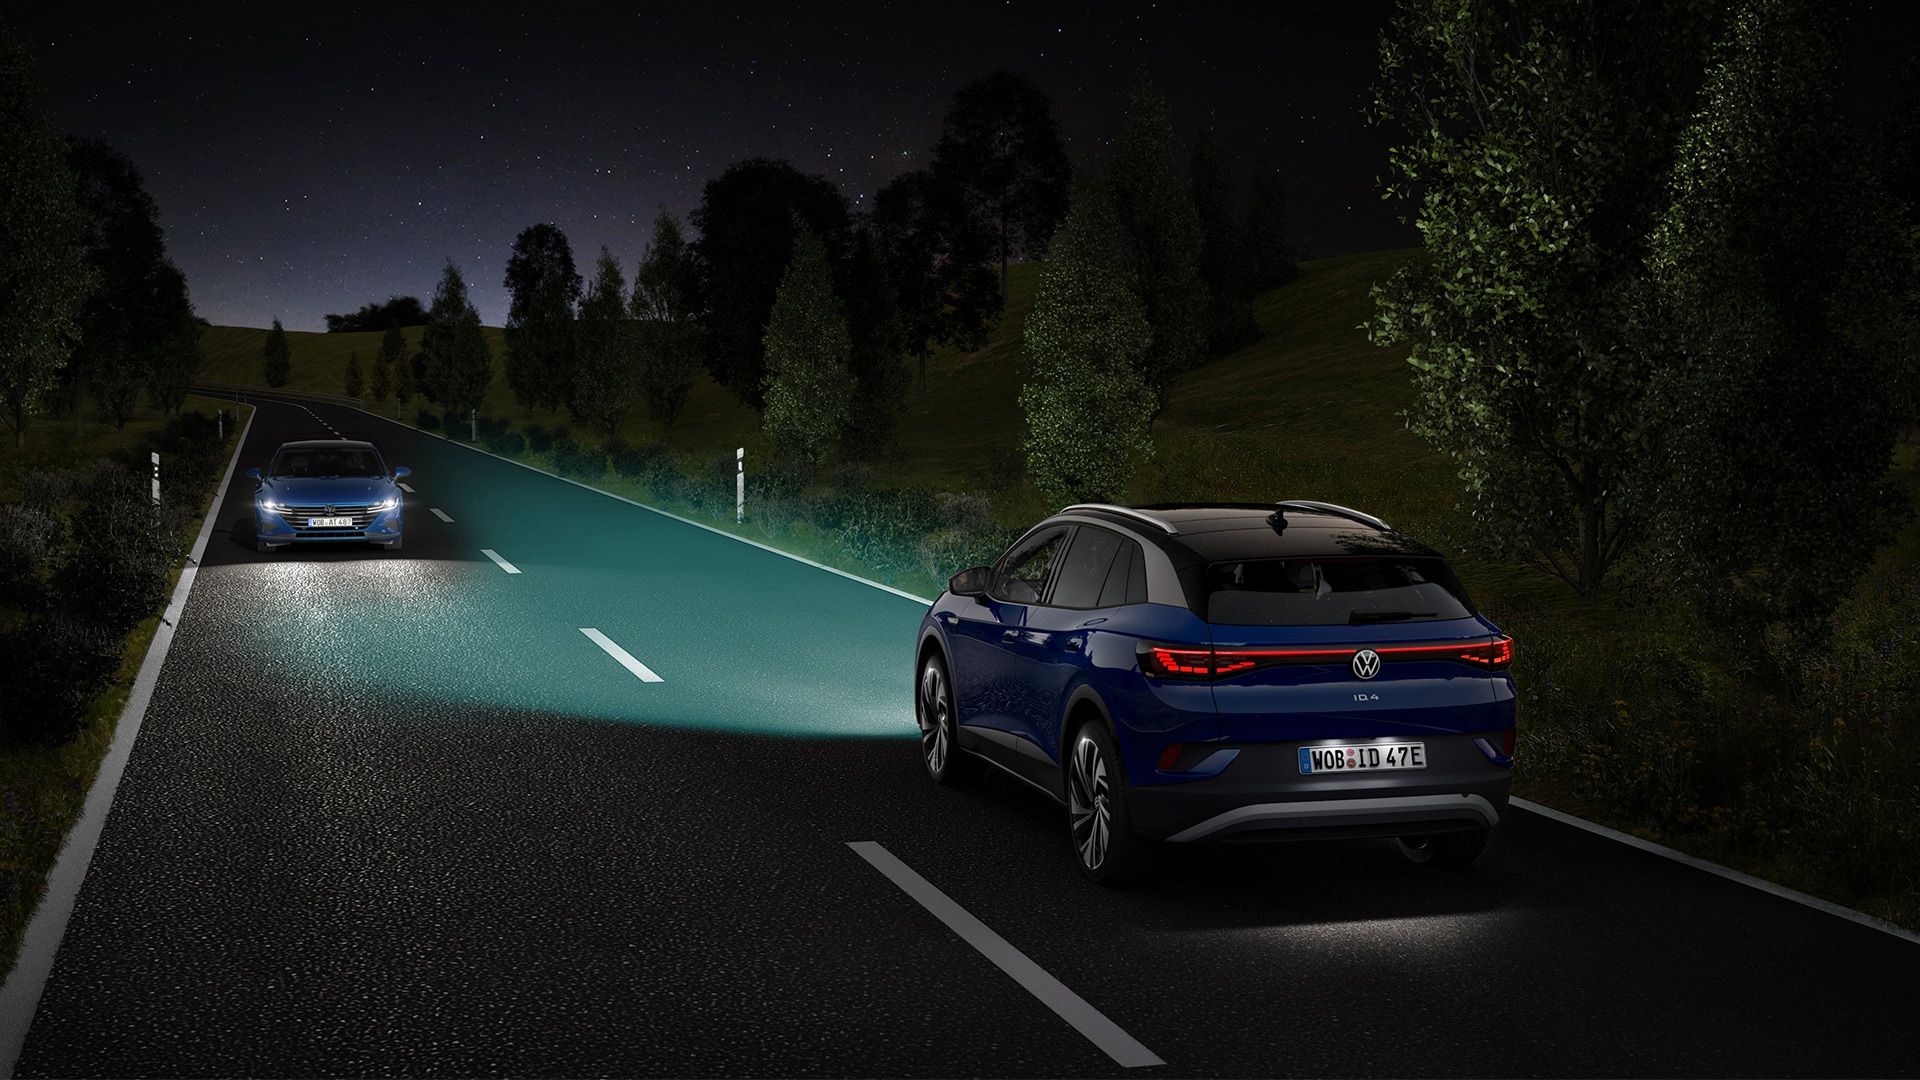 VW ID.4 fährt nachts auf einer Landstraße, hervorgehoben sind die Strahlen der Scheinwerfer